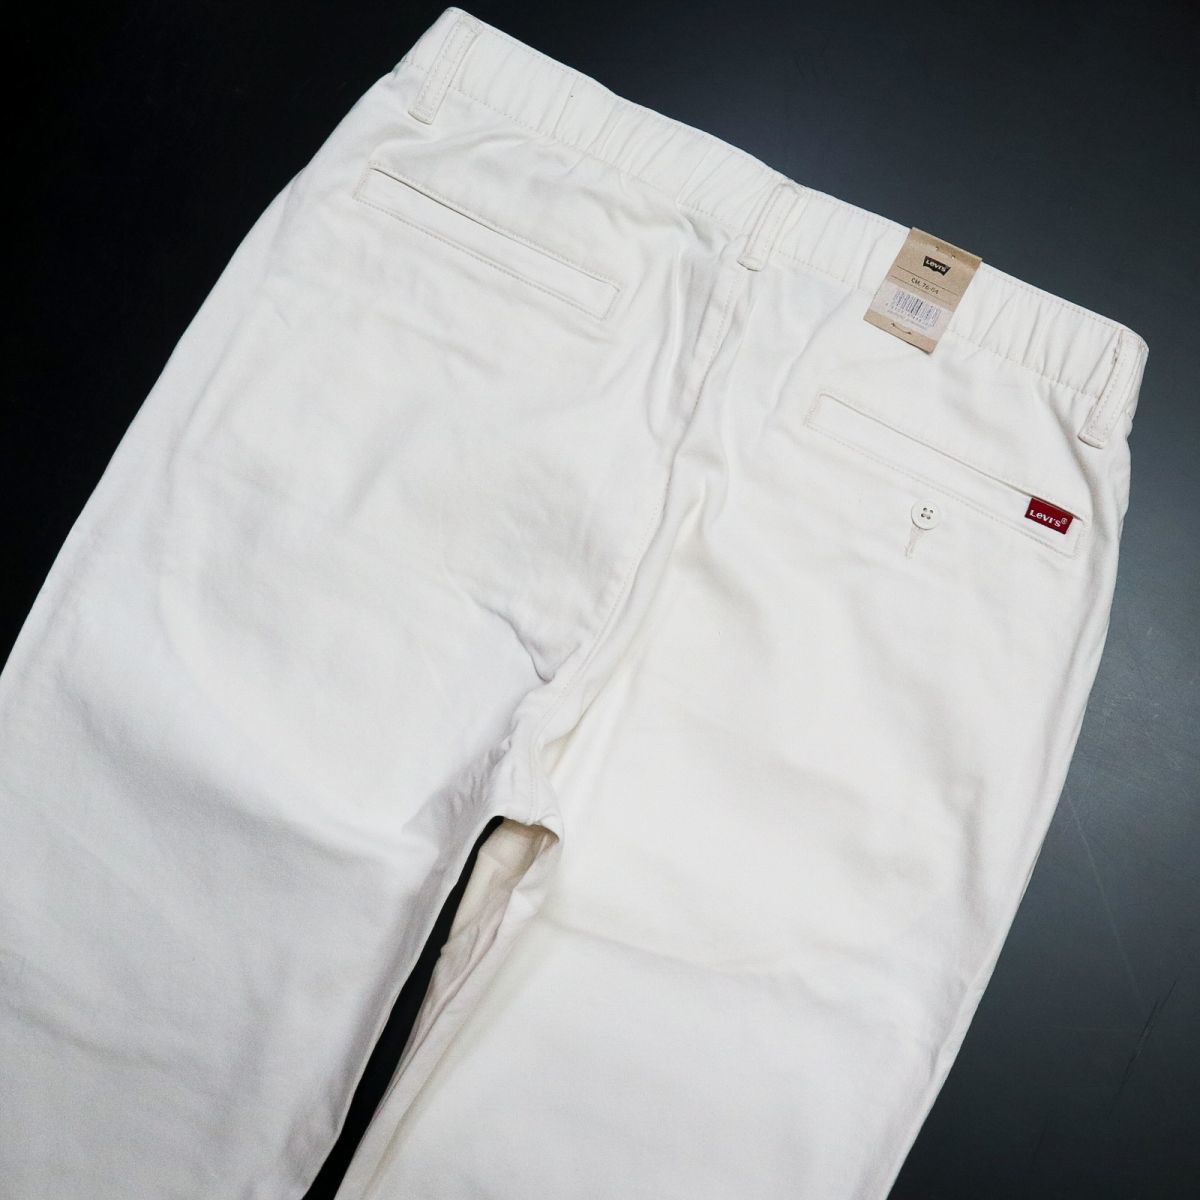 * Levi's Levis XX CHINO новый товар мужской стрейч простой конус брюки из твила длинные брюки M размер [A10401-0020-M] 4 .*QWER*